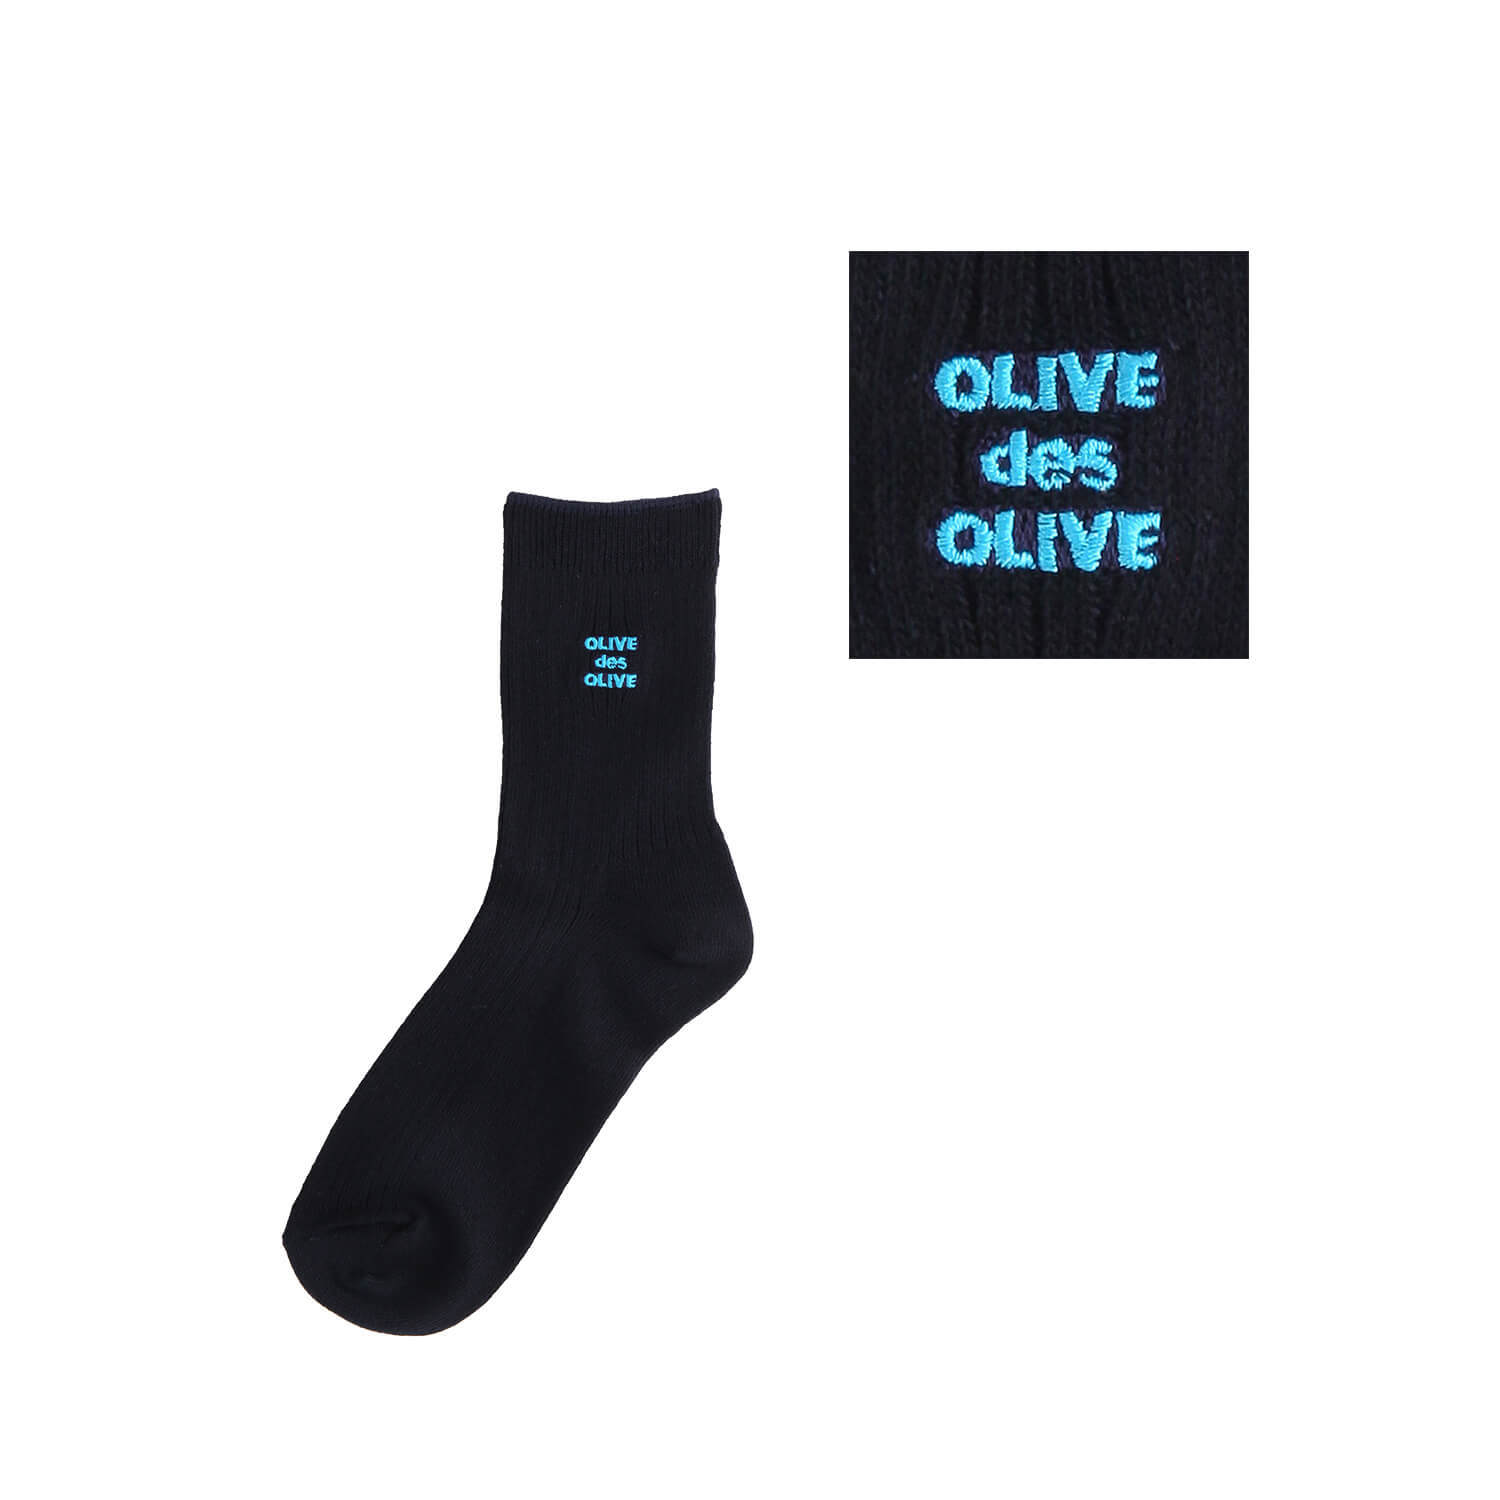 OLIVE des OLIVEのポップなロゴ刺繍入りのレギュラーソックス。刺繍カラー-70ブルー